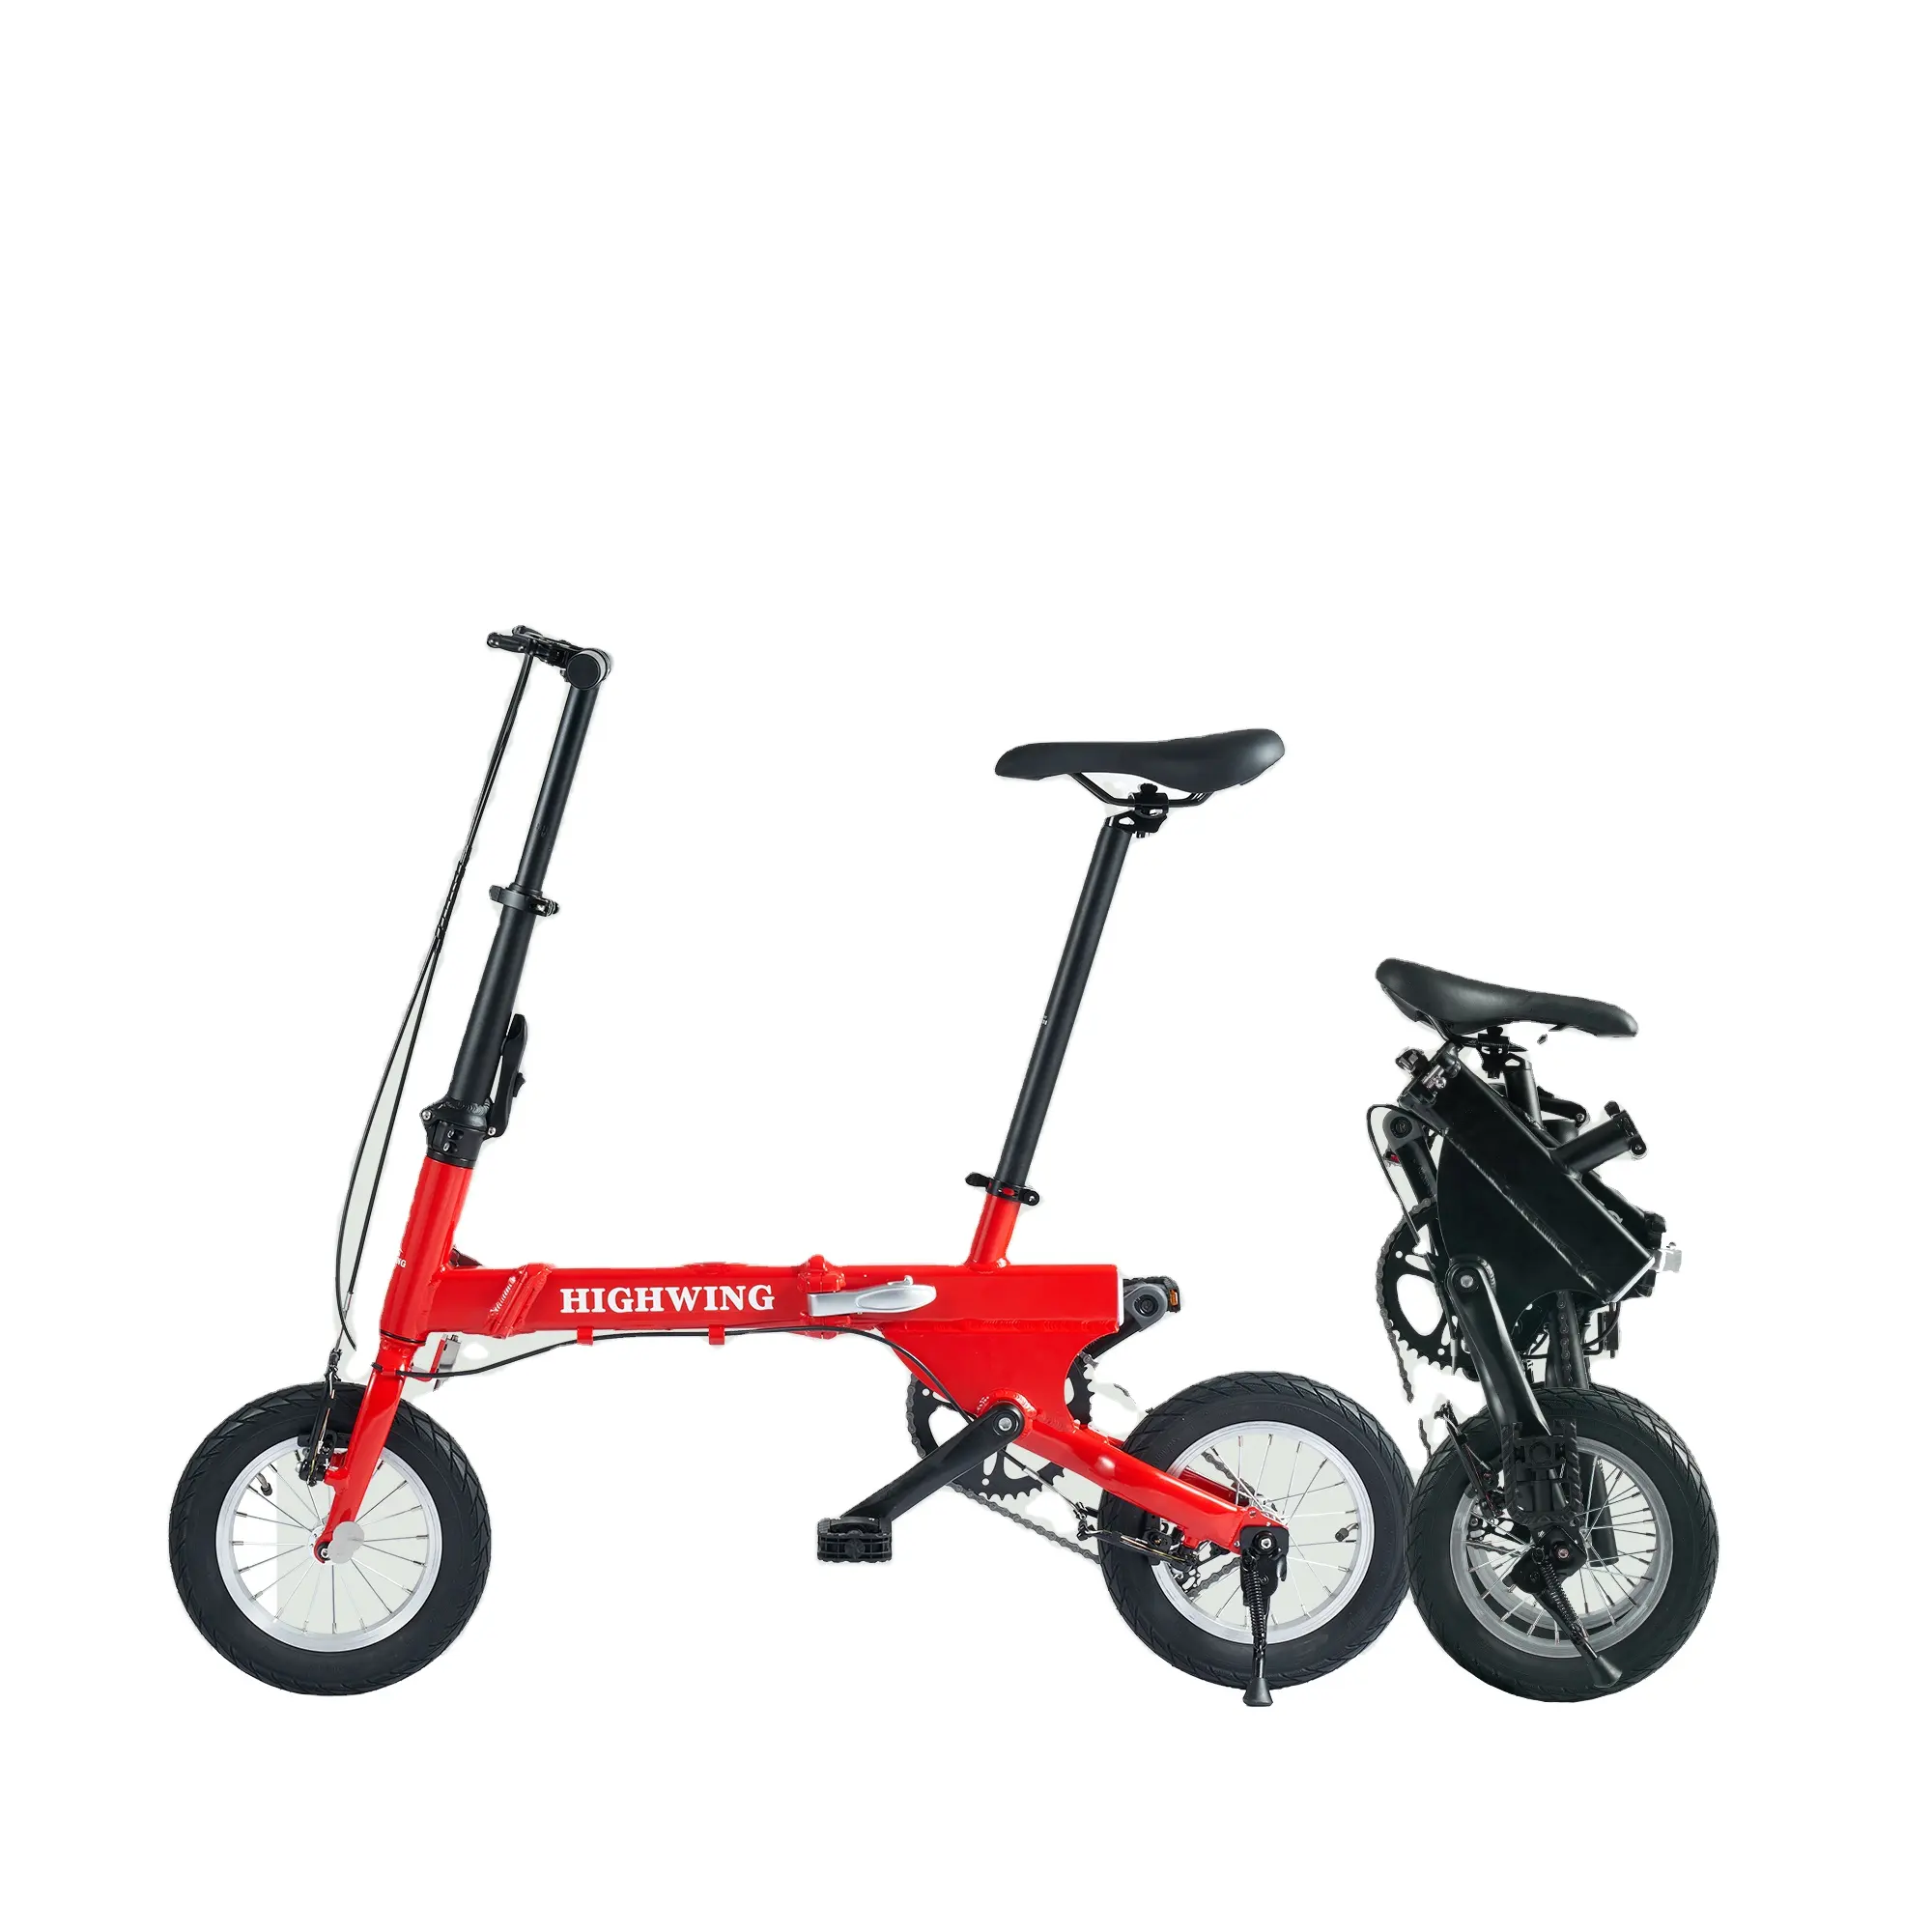 Bicicleta dobrável portátil Highwing para bicicleta ao ar livre, bicicleta barata chinesa Highwing para adultos e mulheres de 14 polegadas